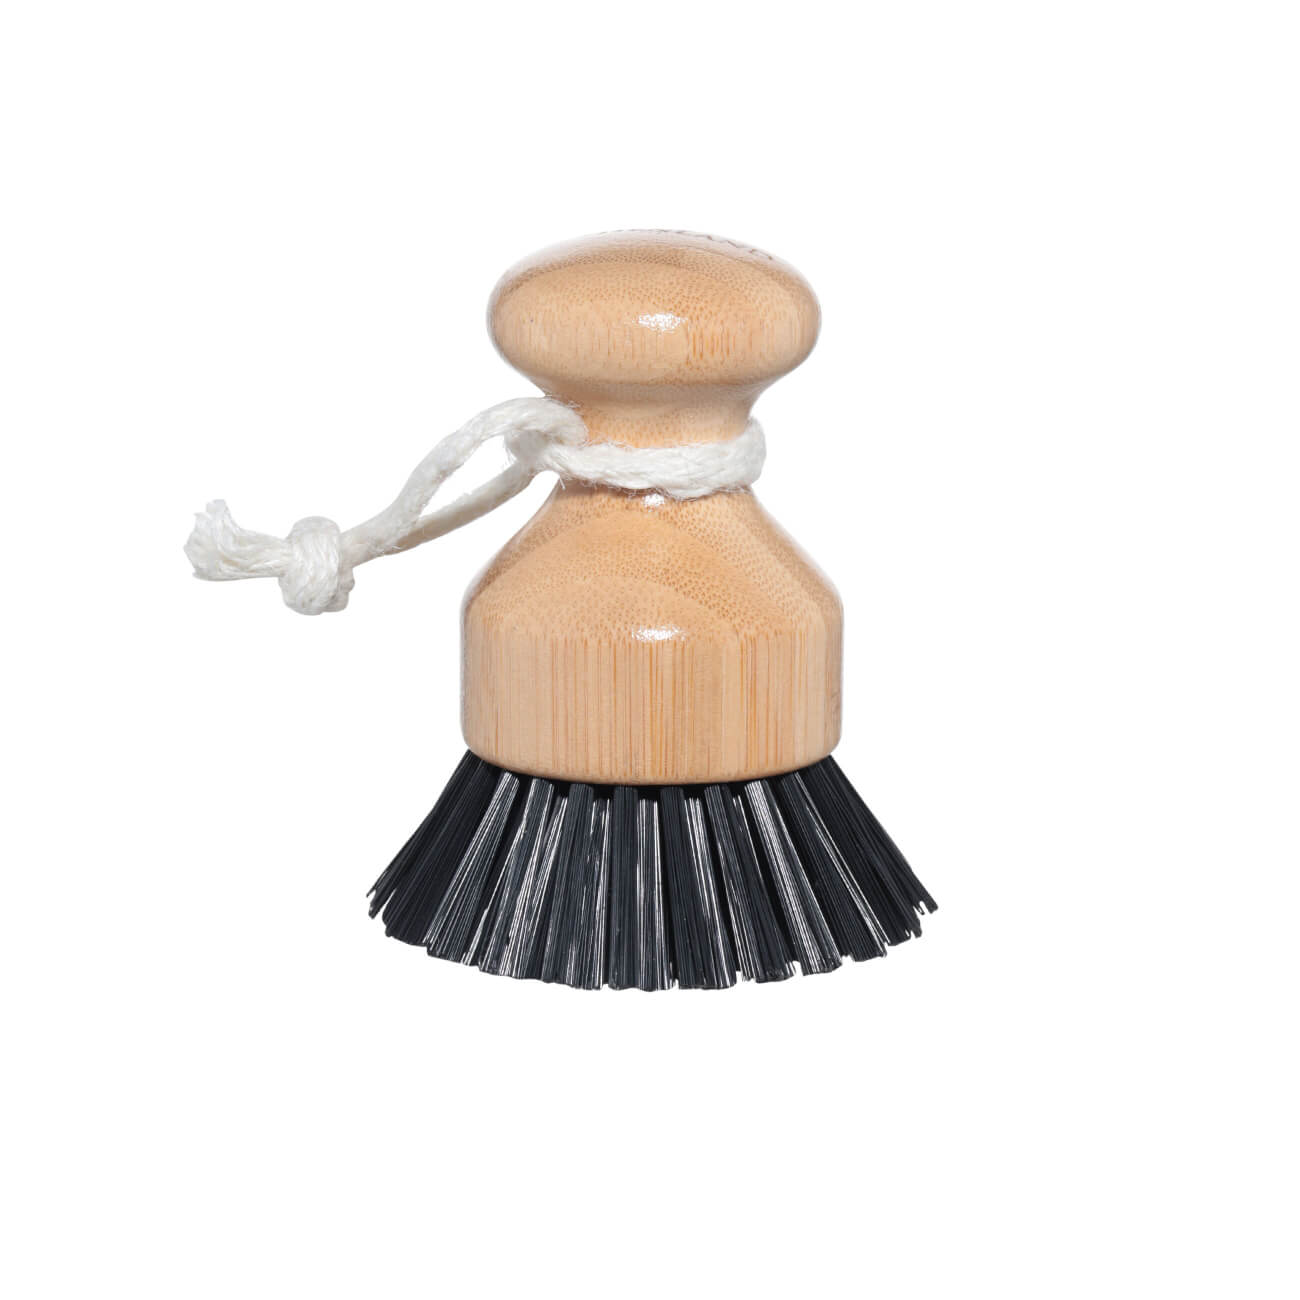 Щетка для мытья посуды, 7 см, бамбук/пластик, черная, Black clean щетка трос для прочистки труб мультидом